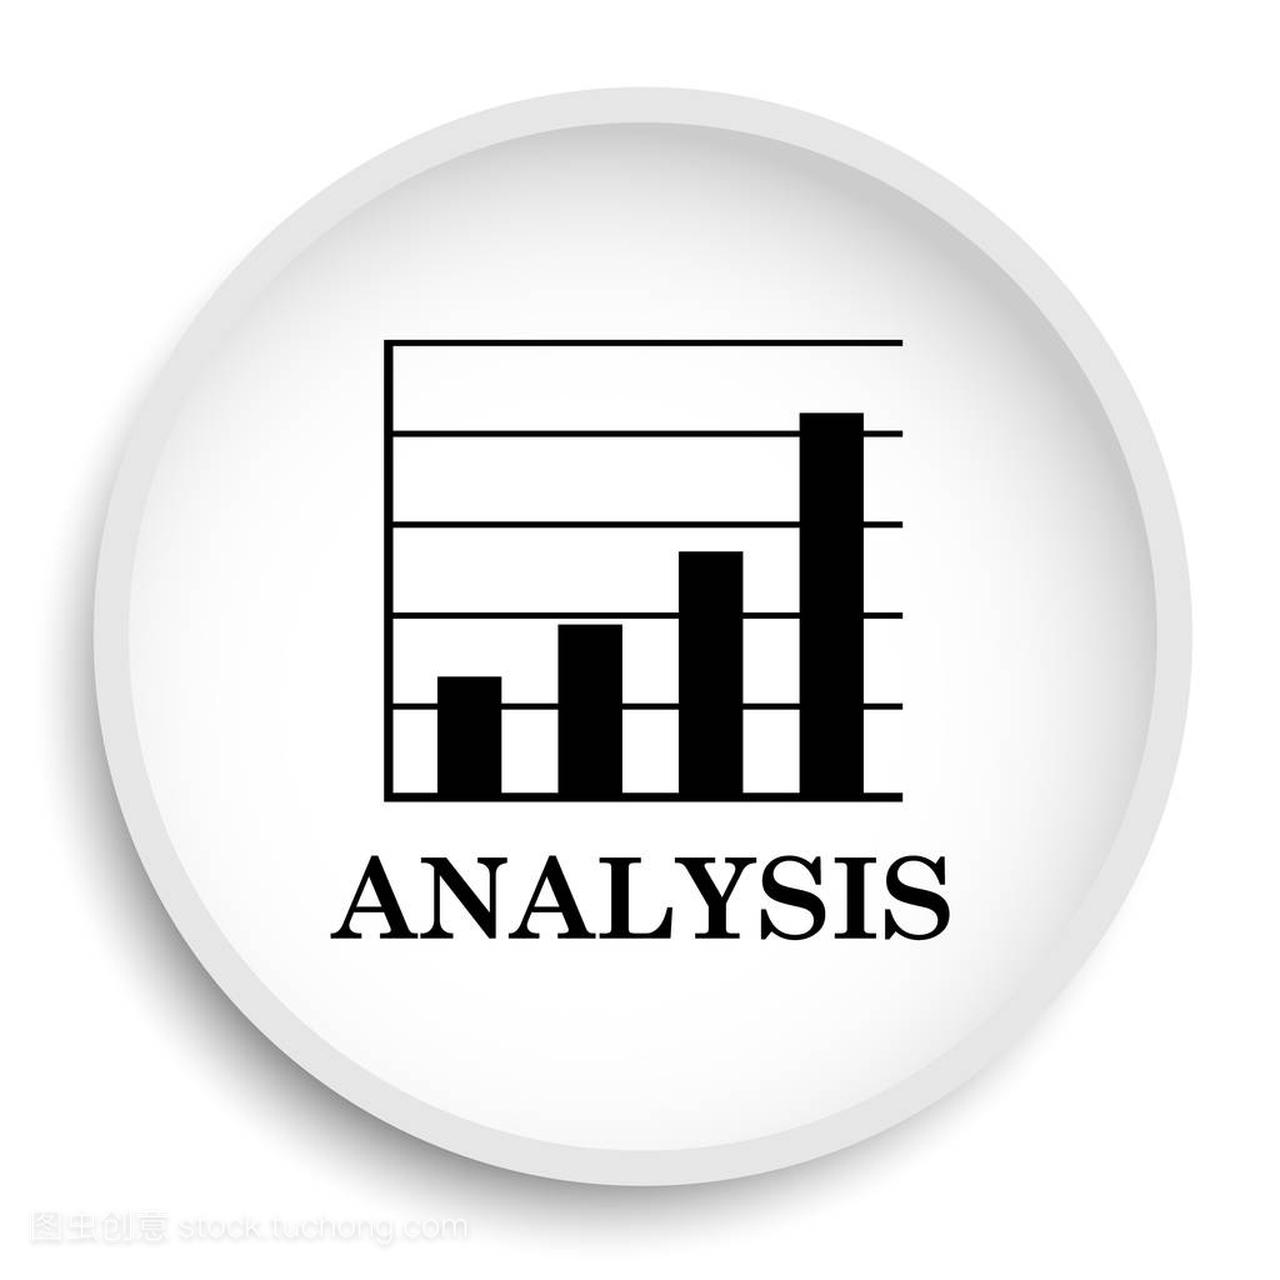 Analysis icon. Analysis website button on 